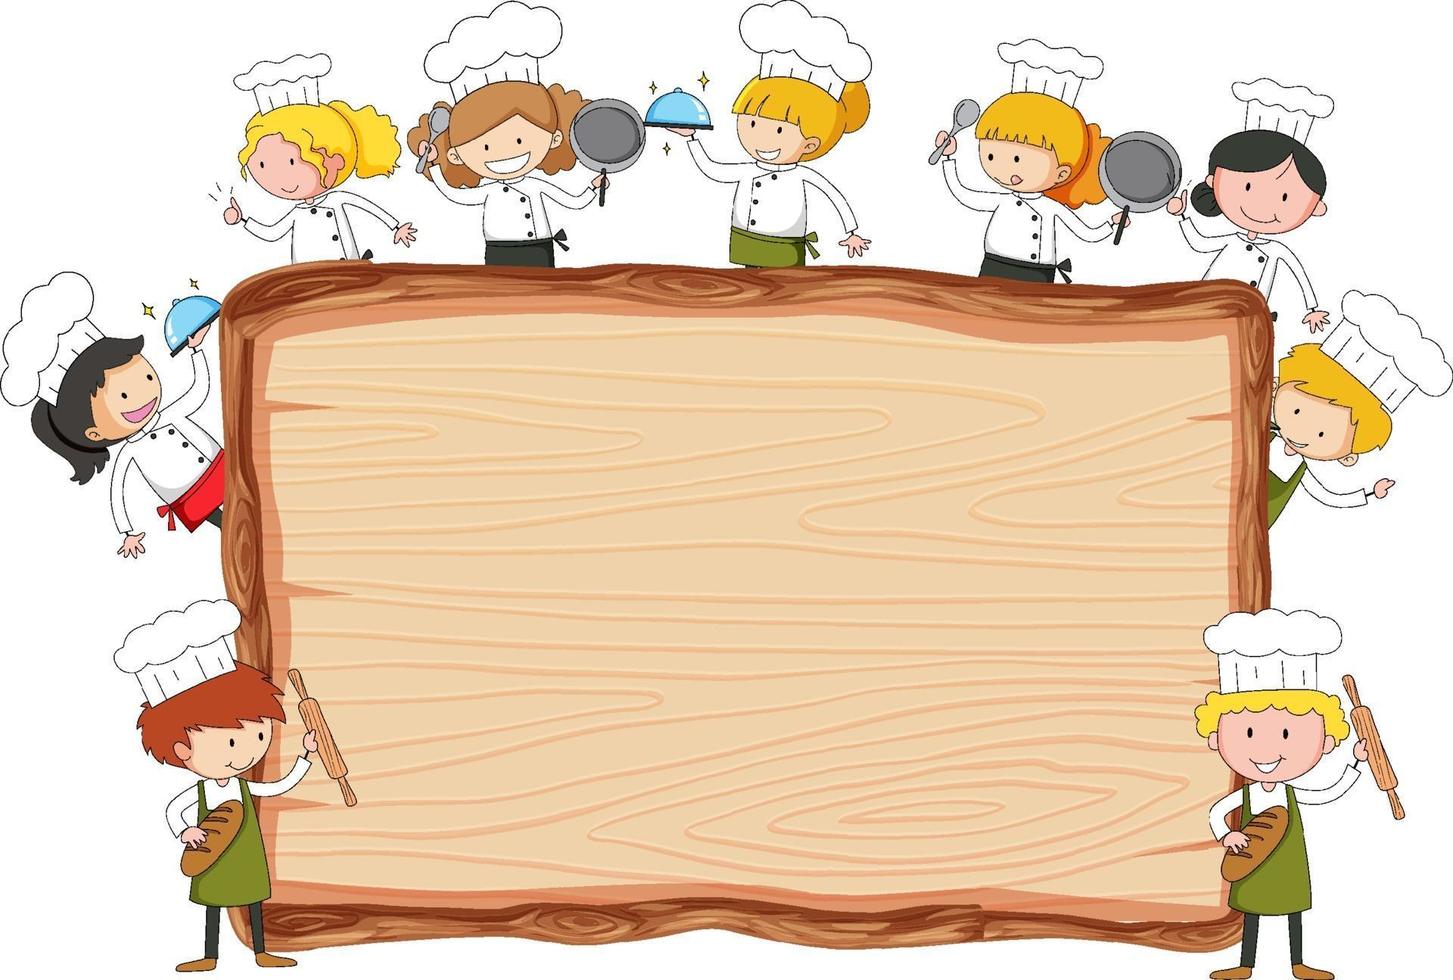 tavola di legno vuota con molti piccoli chef tema isolato vettore